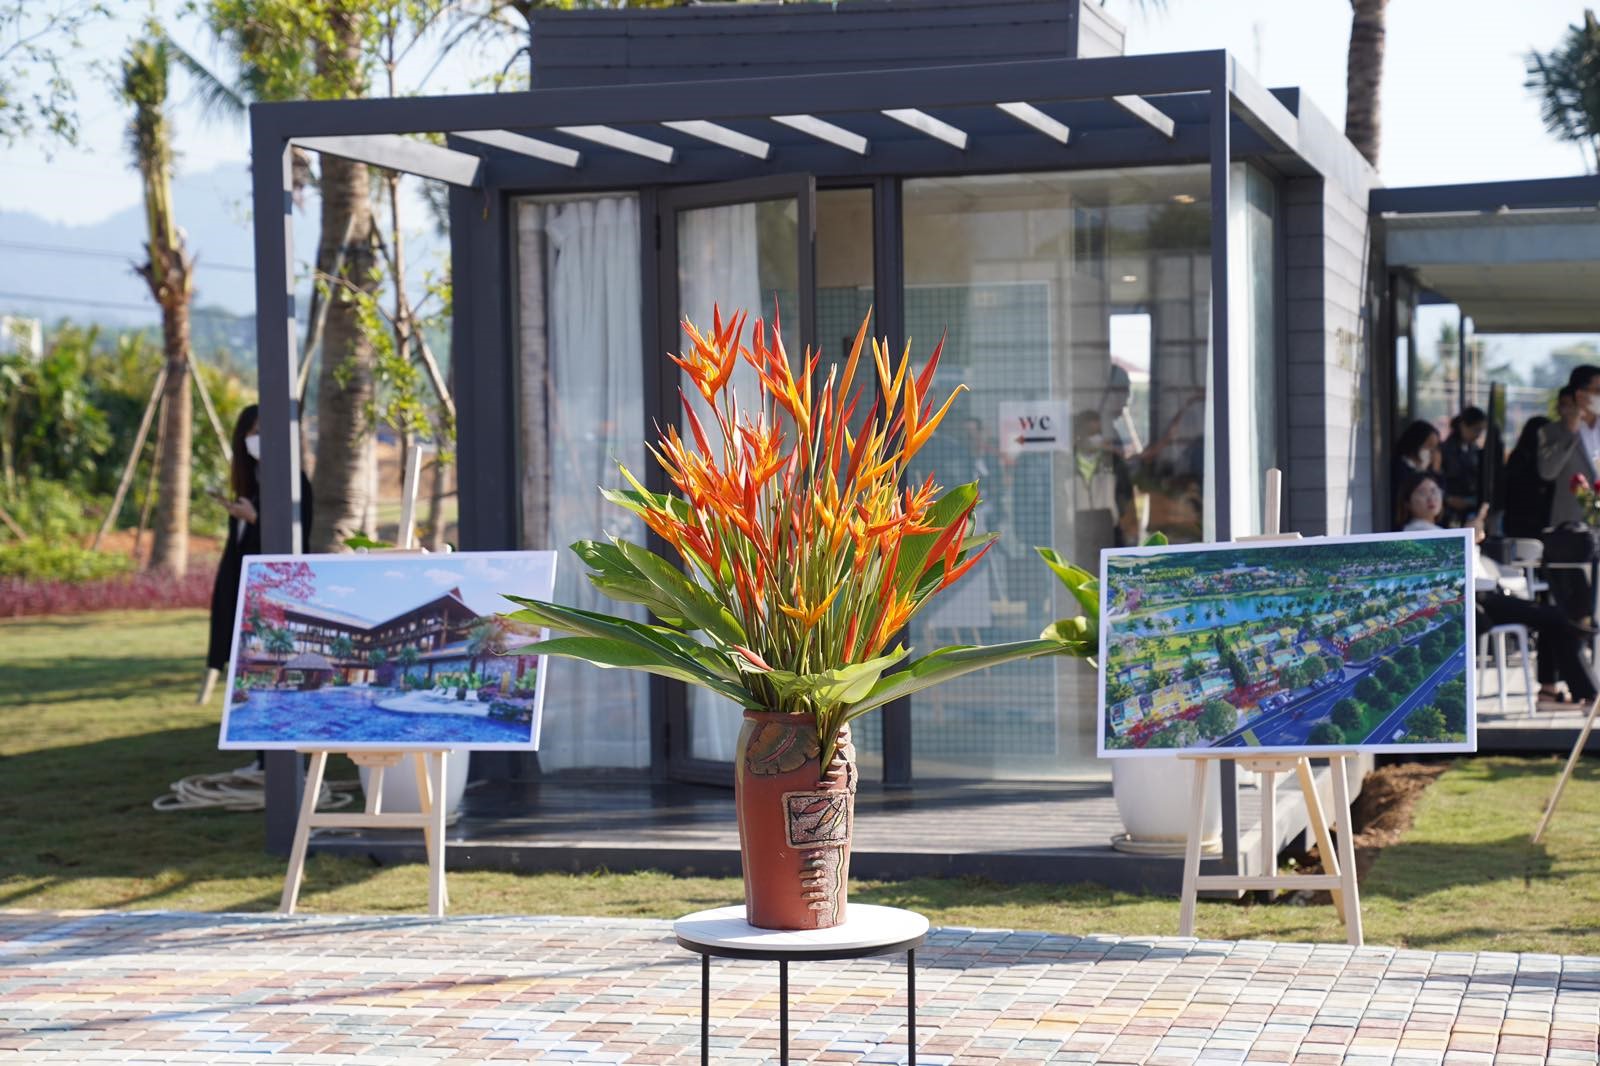 Kinh doanh - Đoàn đại biểu tỉnh Tuyên Quang, tỉnh Vĩnh Phúc tham quan dự án Flamingo Heritage Tân Trào City (Hình 2).